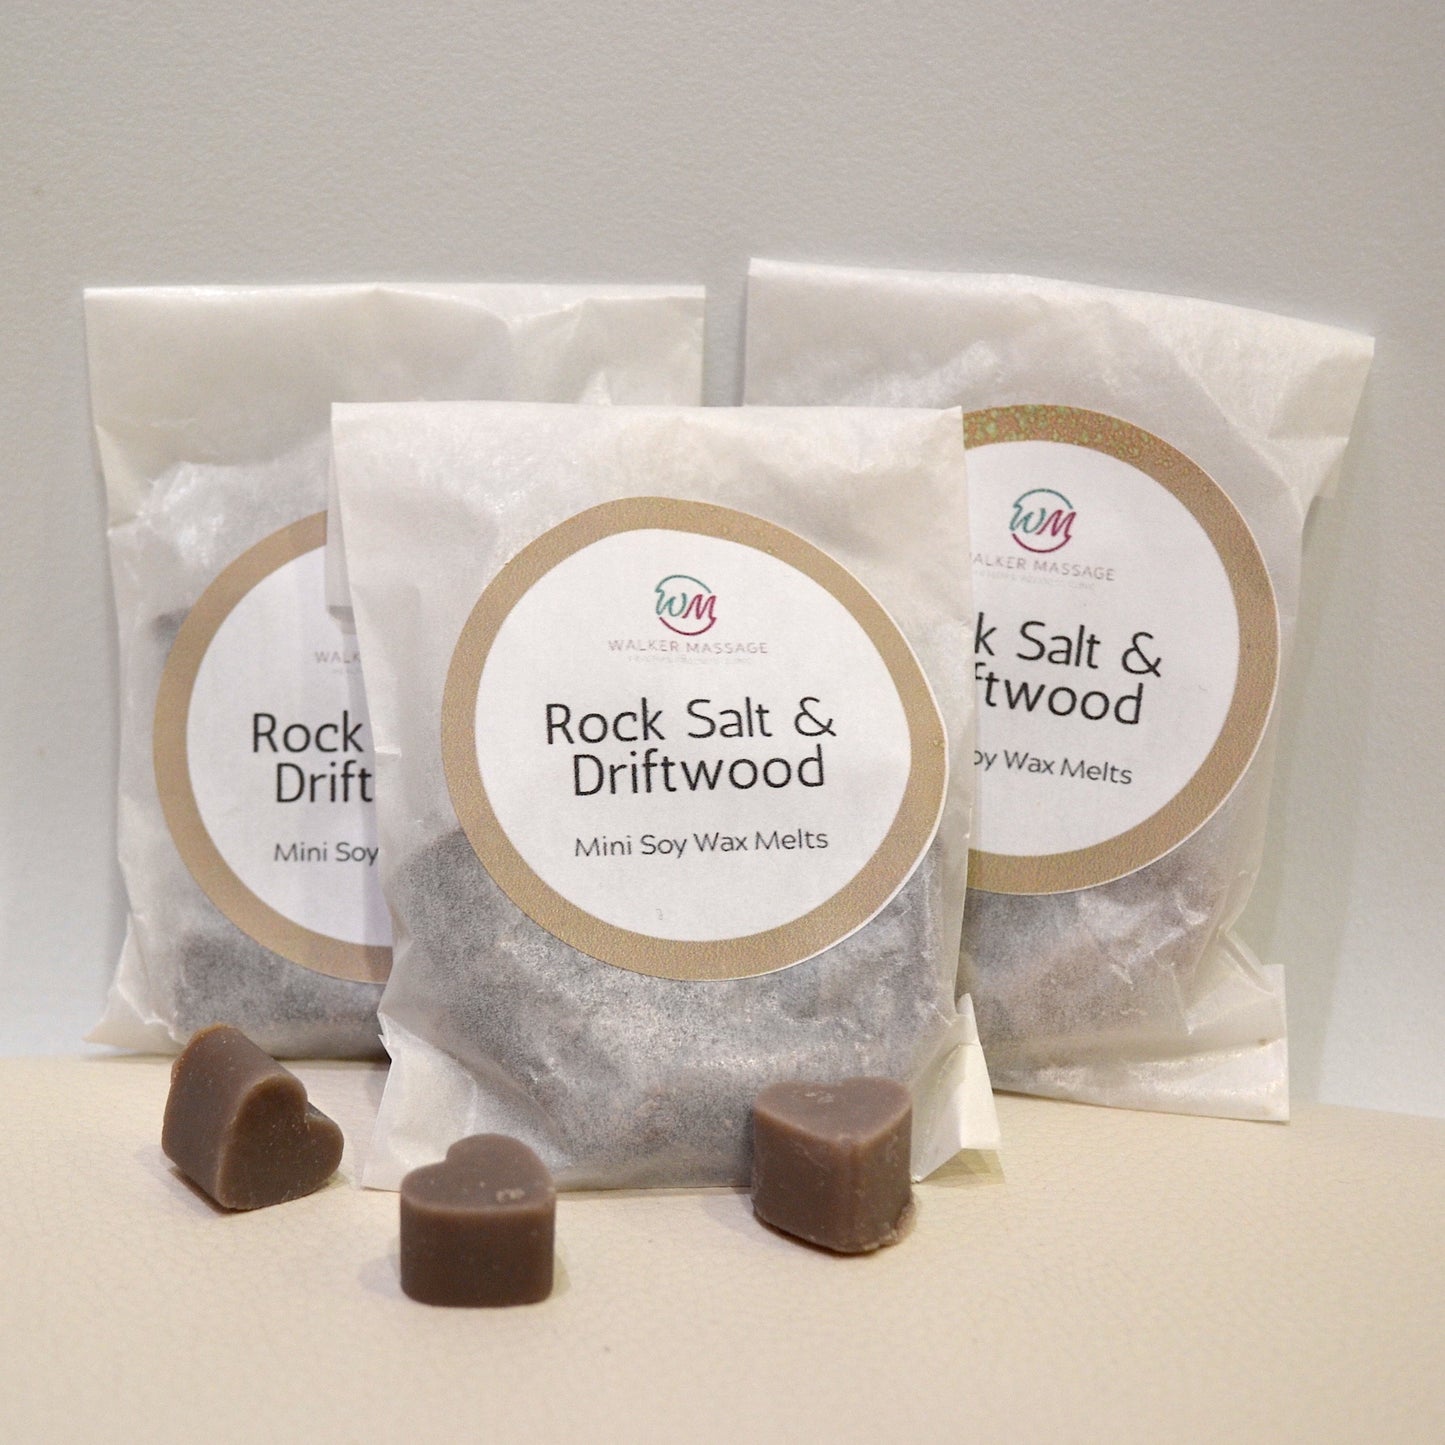 Rock Salt & Driftwood - Wax Melt Bag 20g